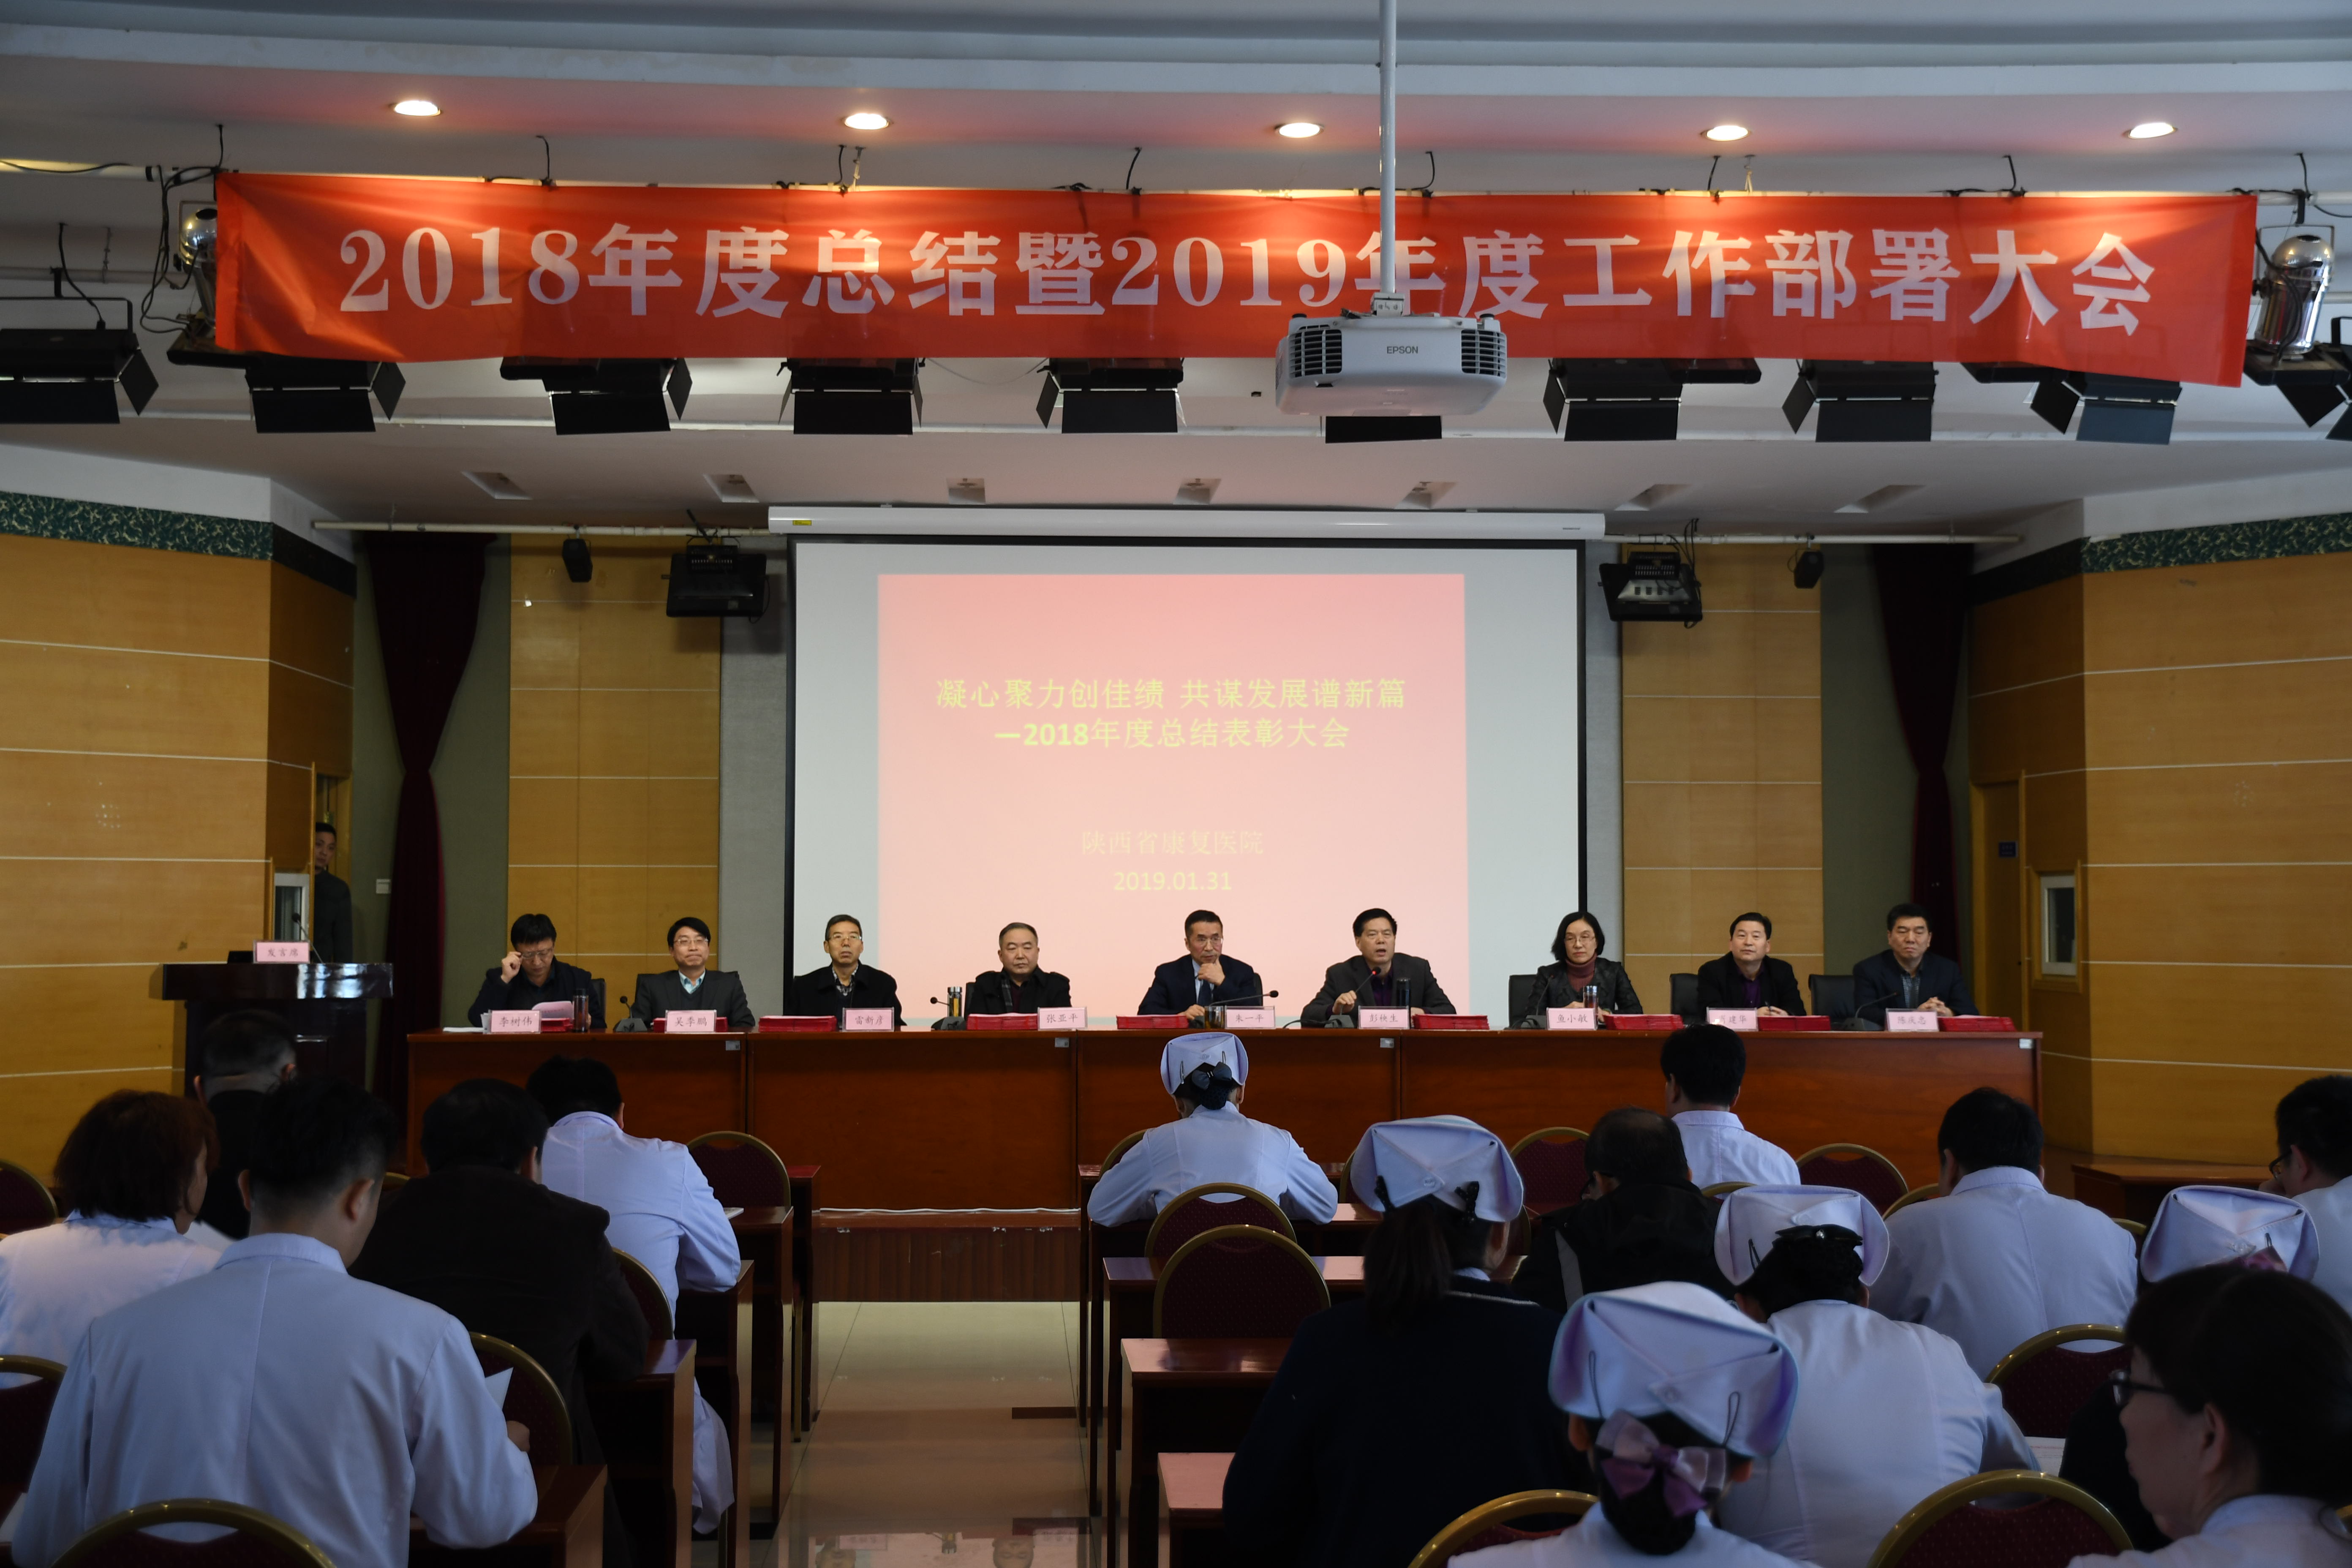 【继往开来】陕西省康复医院召开2018年度总结表彰暨2019年度工作部署大会